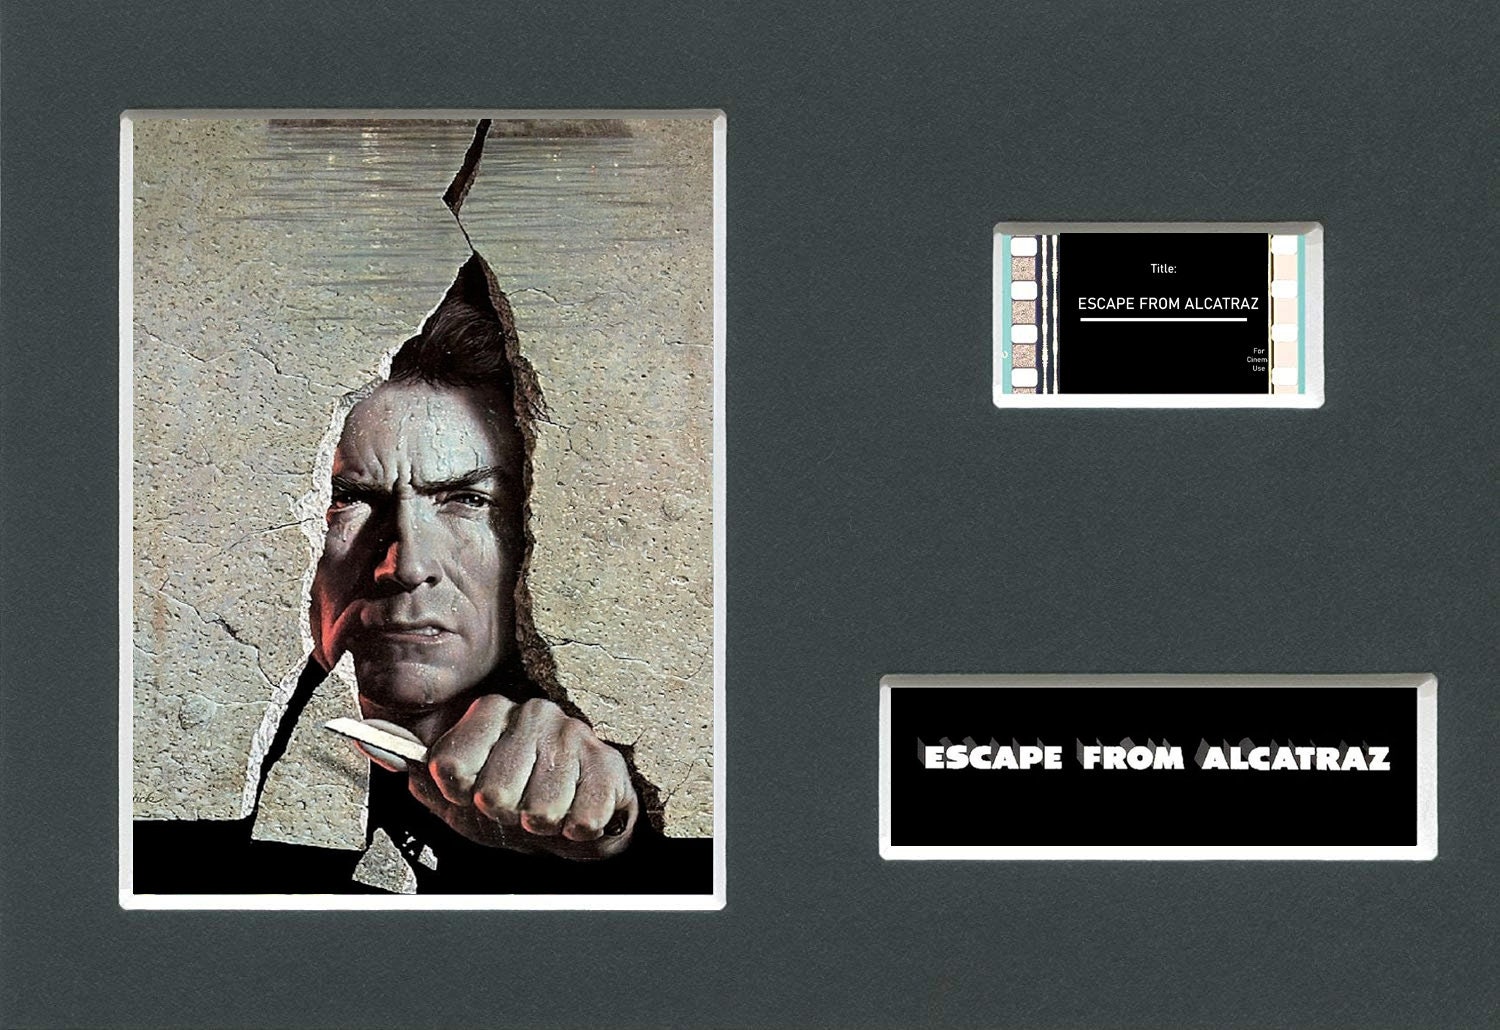 Papier-Mache Head Ruse in Cell from 1962 Alcatraz Prison Escape